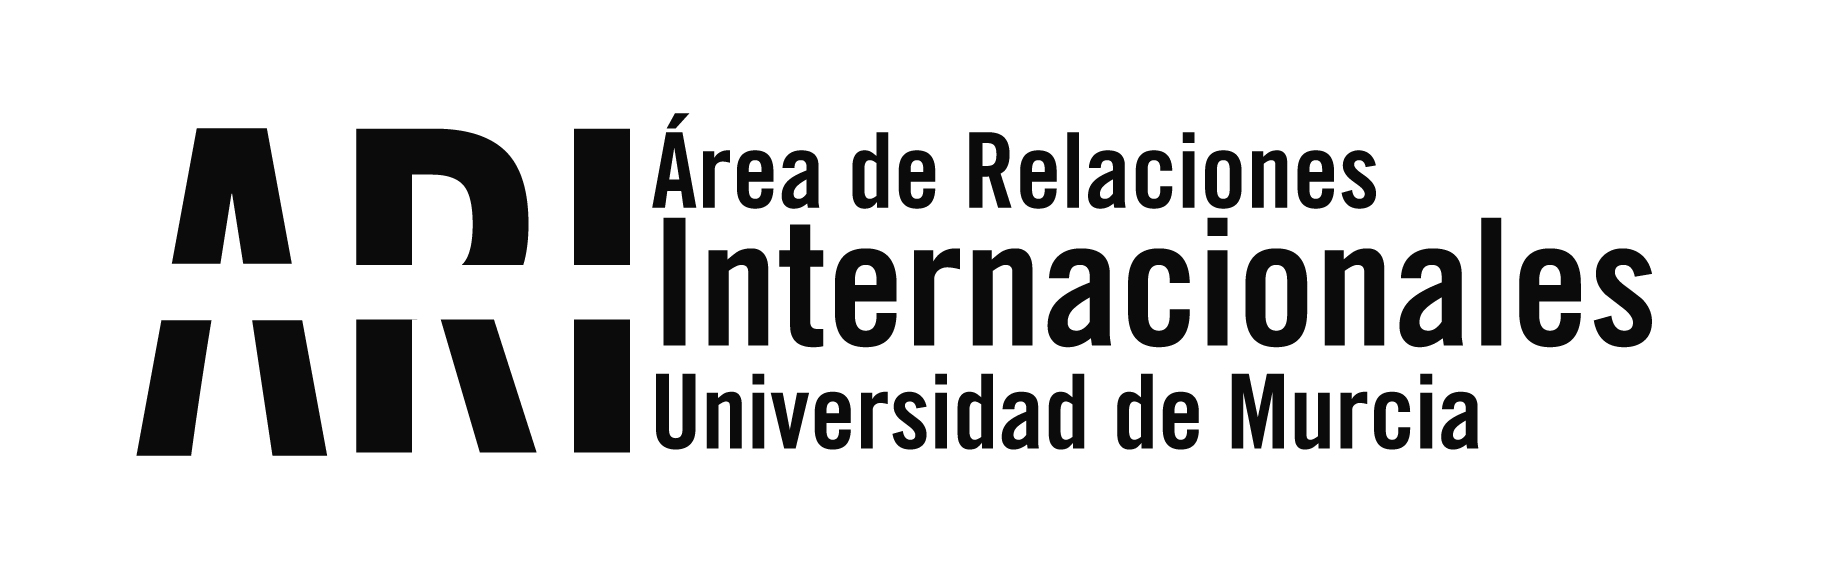 La Universidad de Murcia da la bienvenida a los estudiantes internacionales del Segundo Cuatrimestre 2014-15 - Área de Relaciones Internacionales